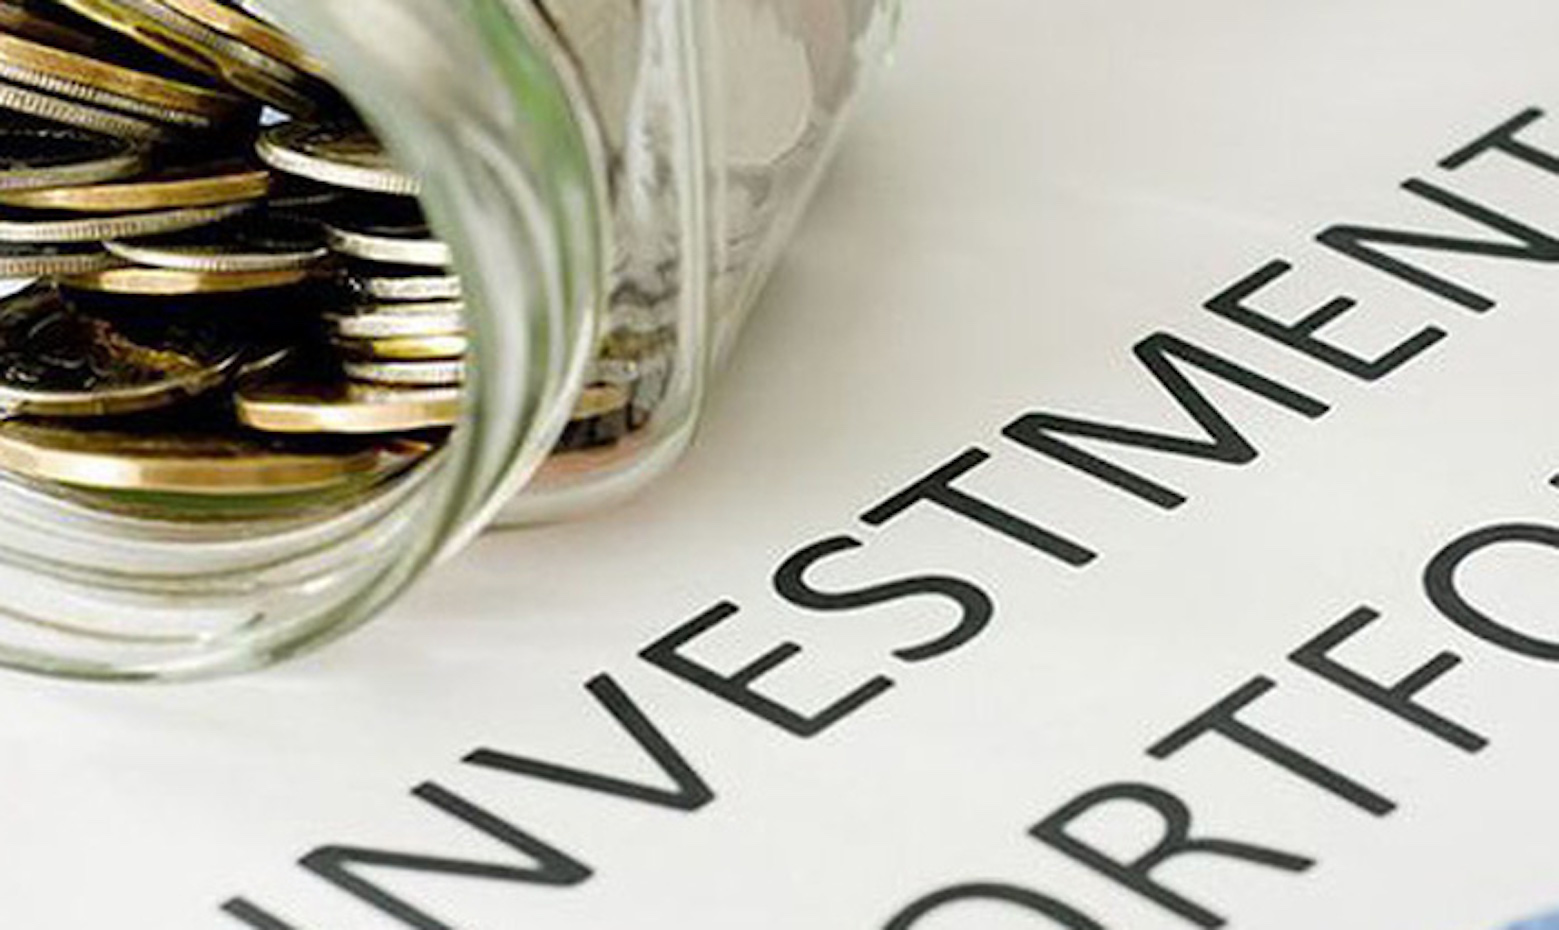 Hợp đồng dịch vụ uỷ thác quản lí danh mục đầu tư chứng khoán là gì? Các điều khoản